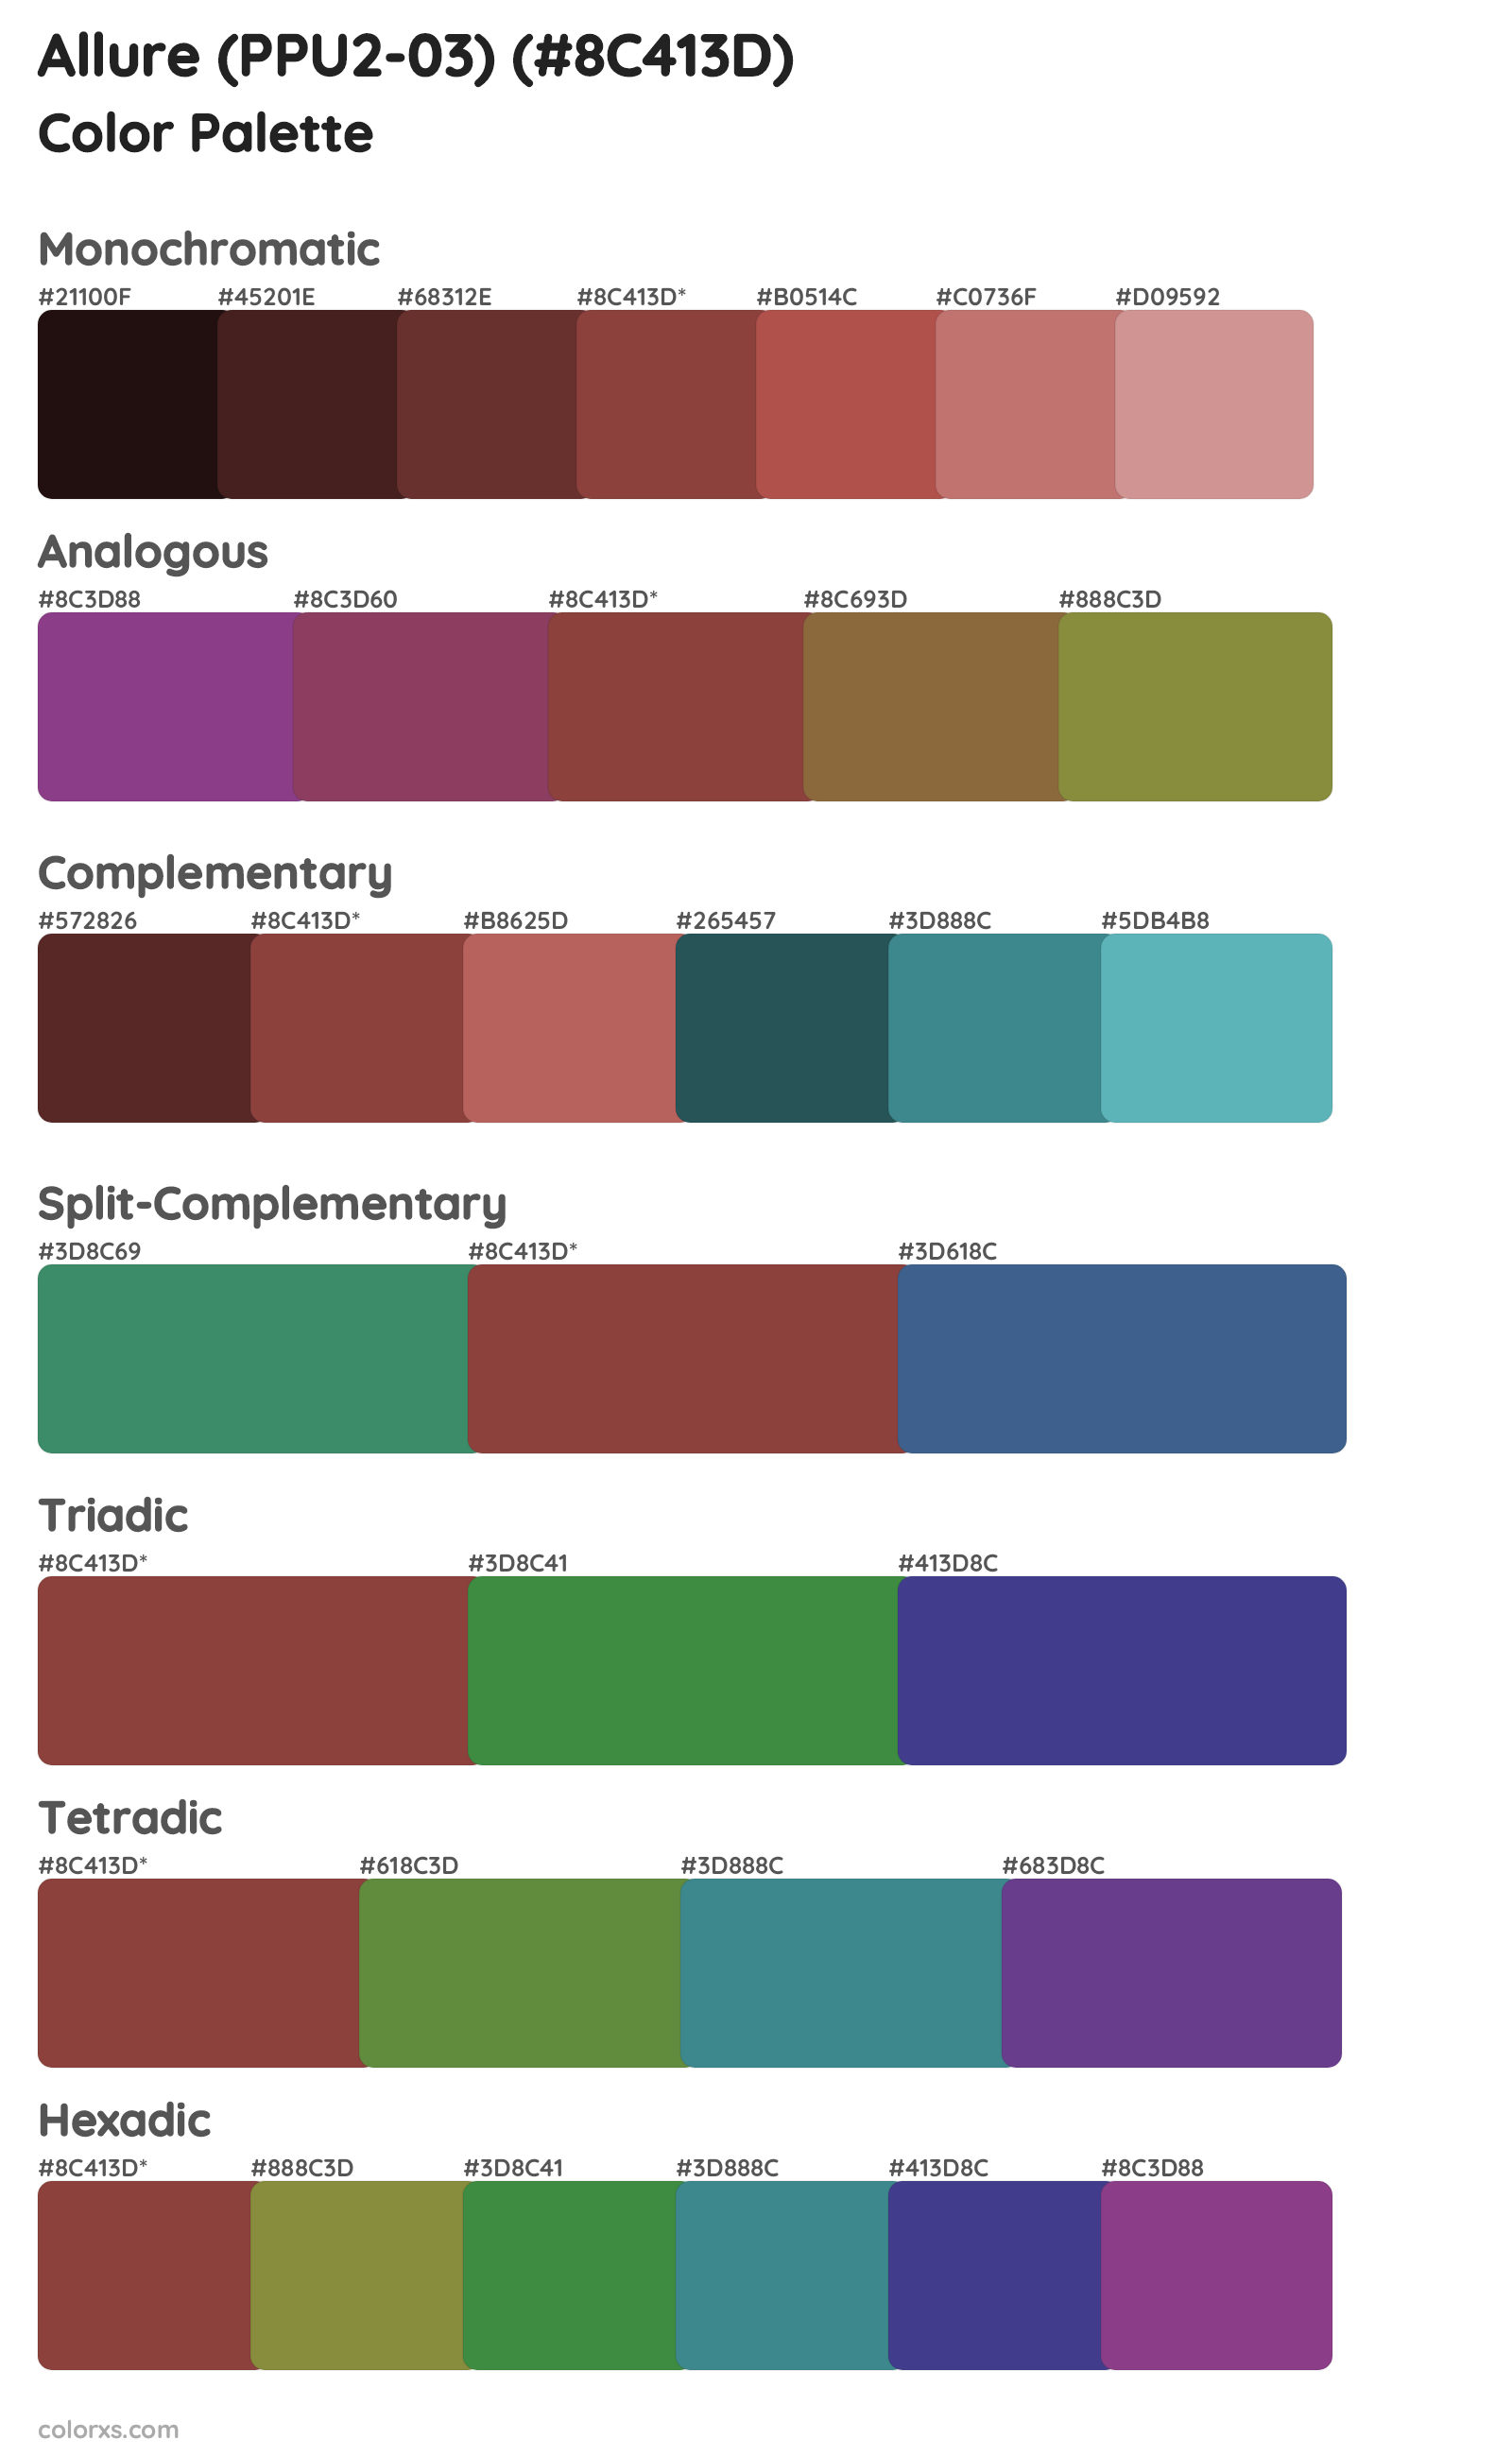 Allure (PPU2-03) Color Scheme Palettes